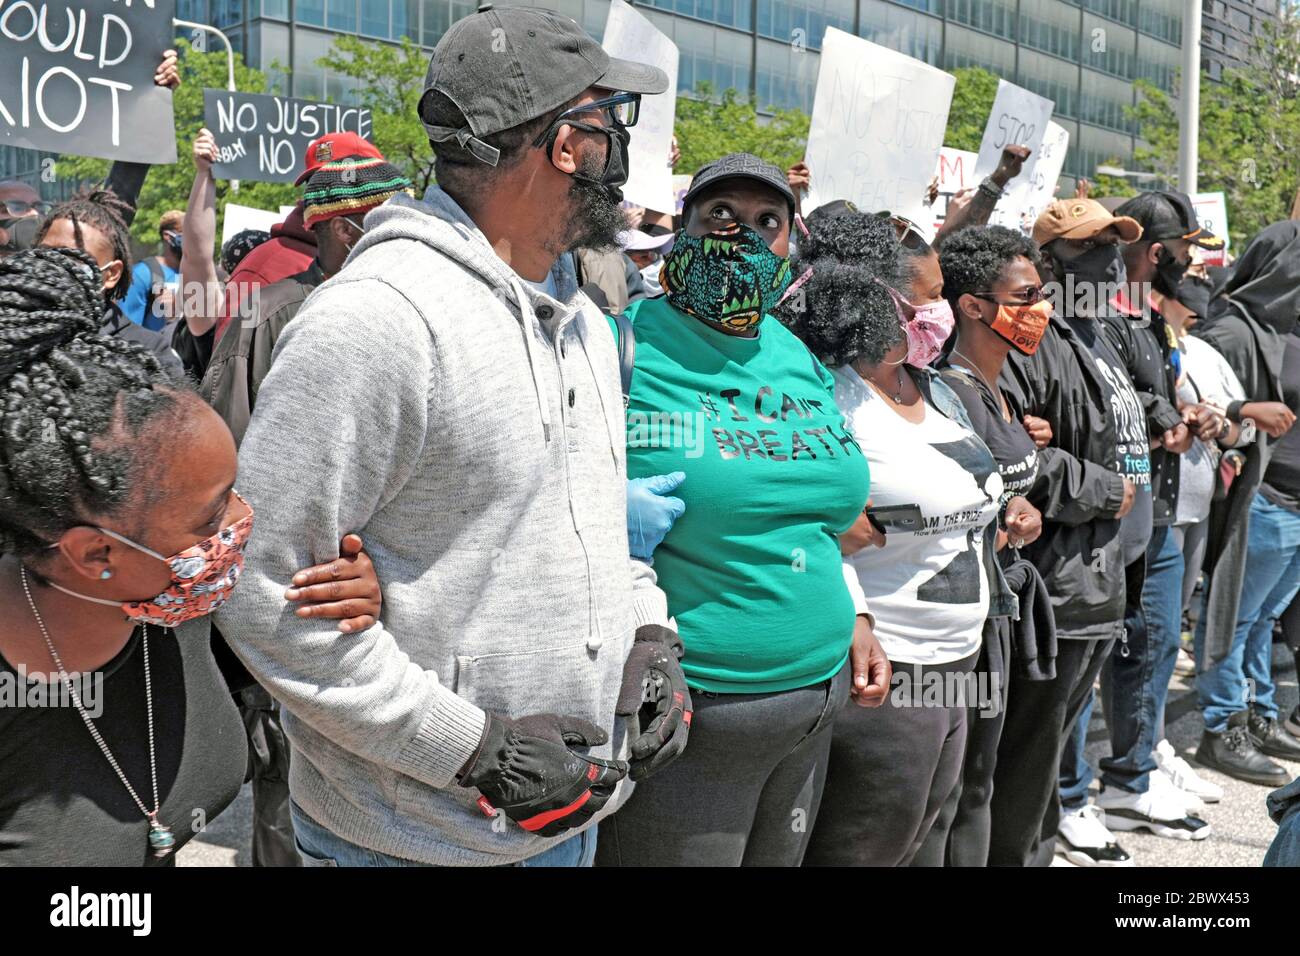 Les manifestants se préparent à marcher dans le centre-ville de Cleveland, Ohio, États-Unis contre la mort de George Floyd aux mains de la police de Minneapolis. Banque D'Images